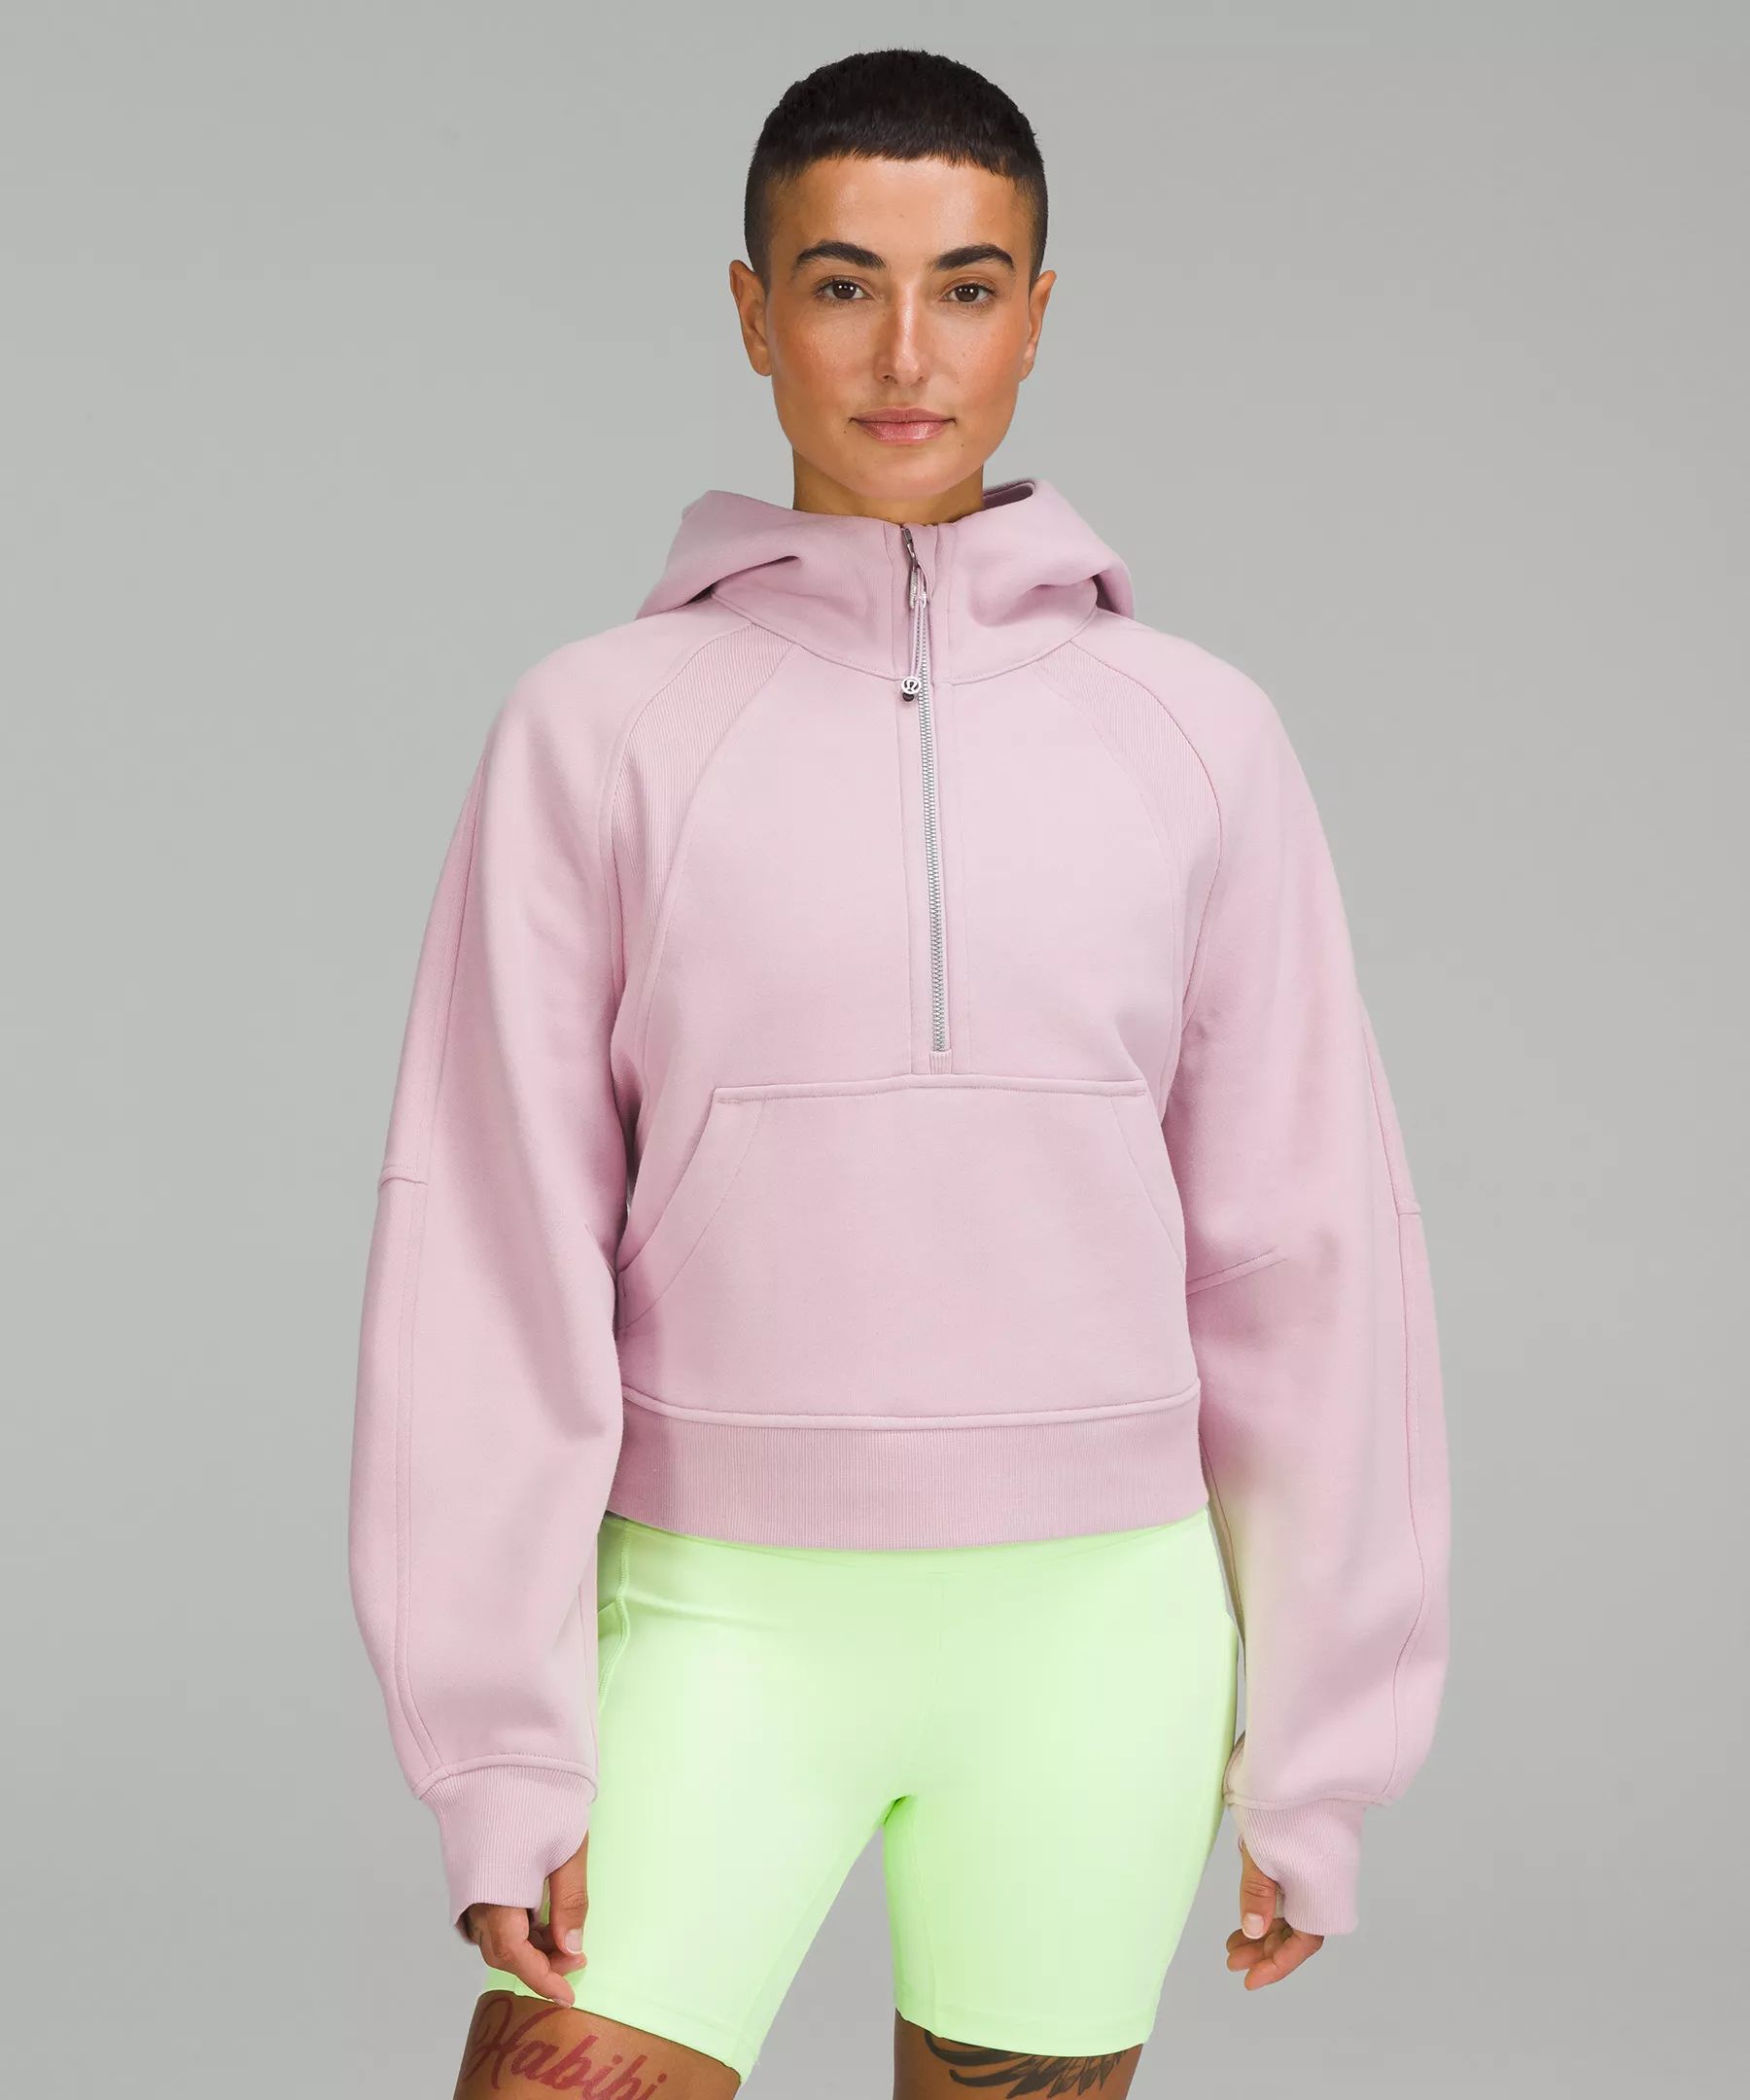 Scuba Oversized Half-Zip Hoodie | Women's Hoodies & Sweatshirts | lululemon | Lululemon (US)